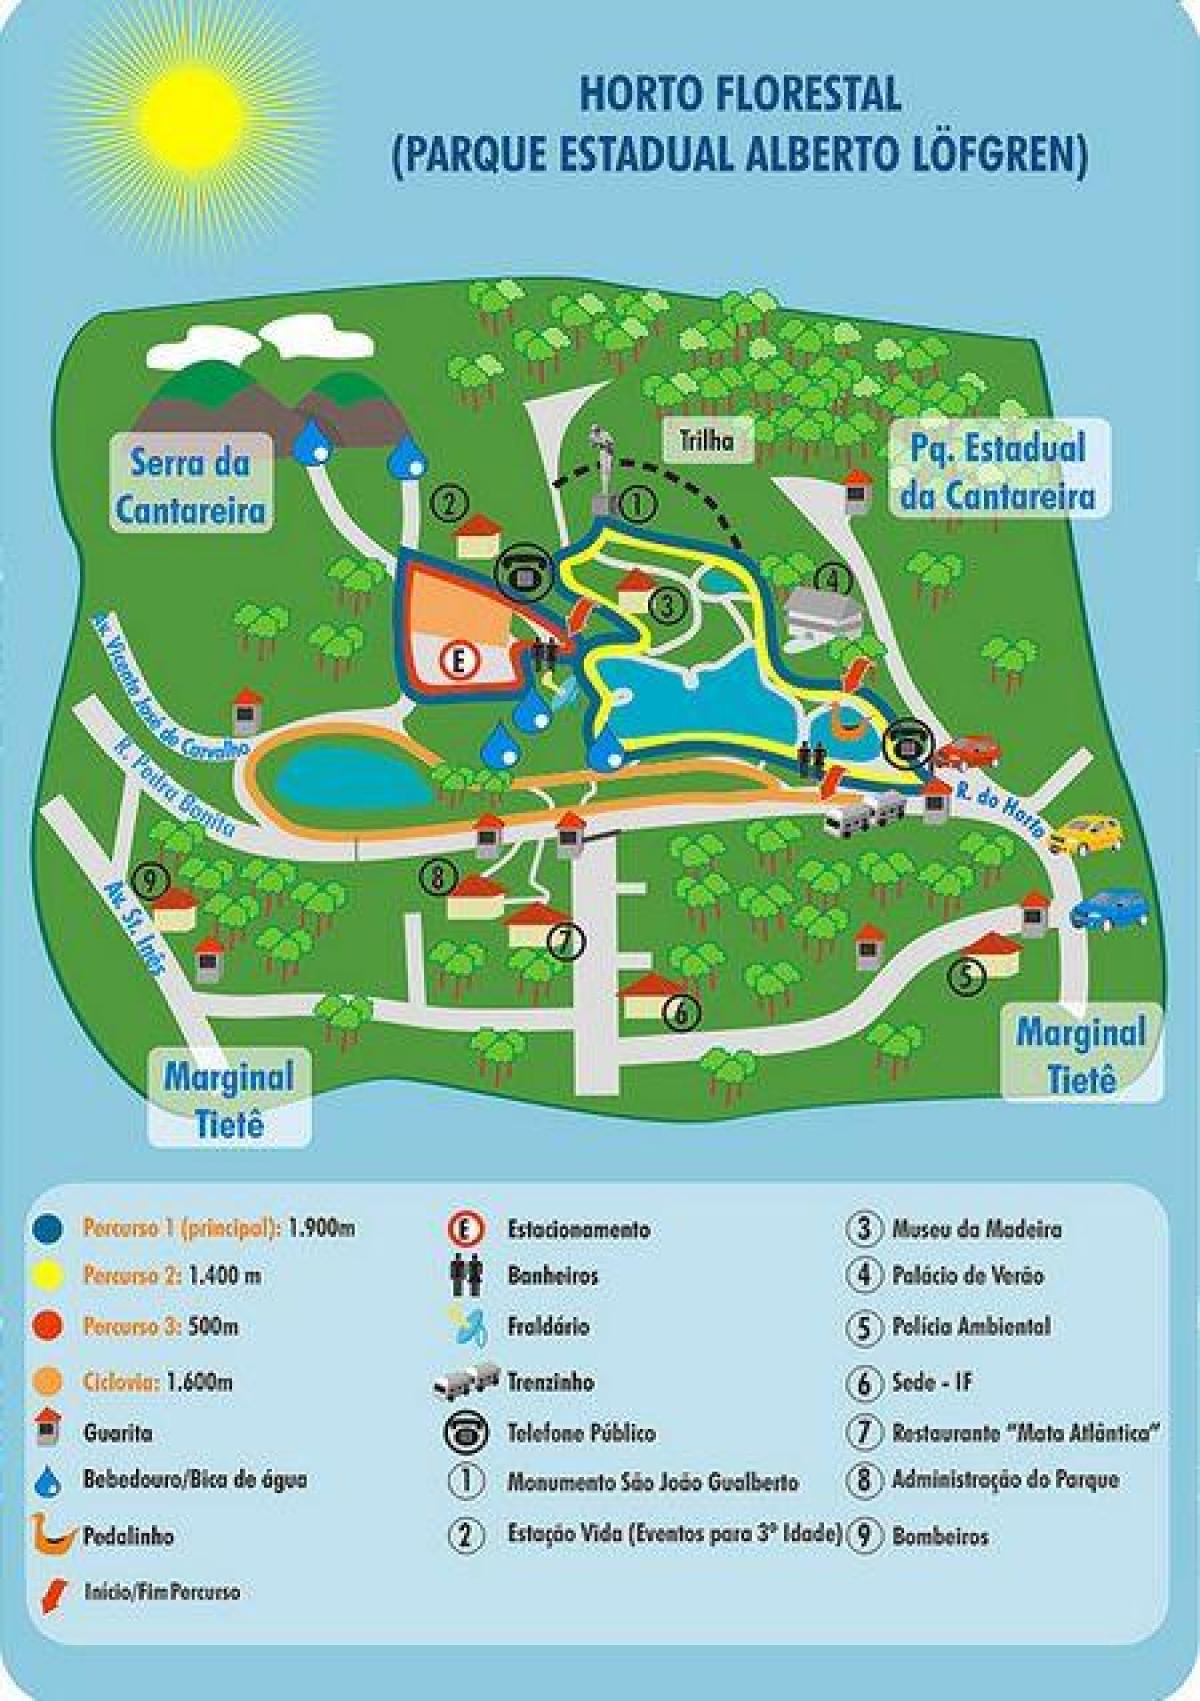 Alberto Löfgren park haritası - bahçe çiçek